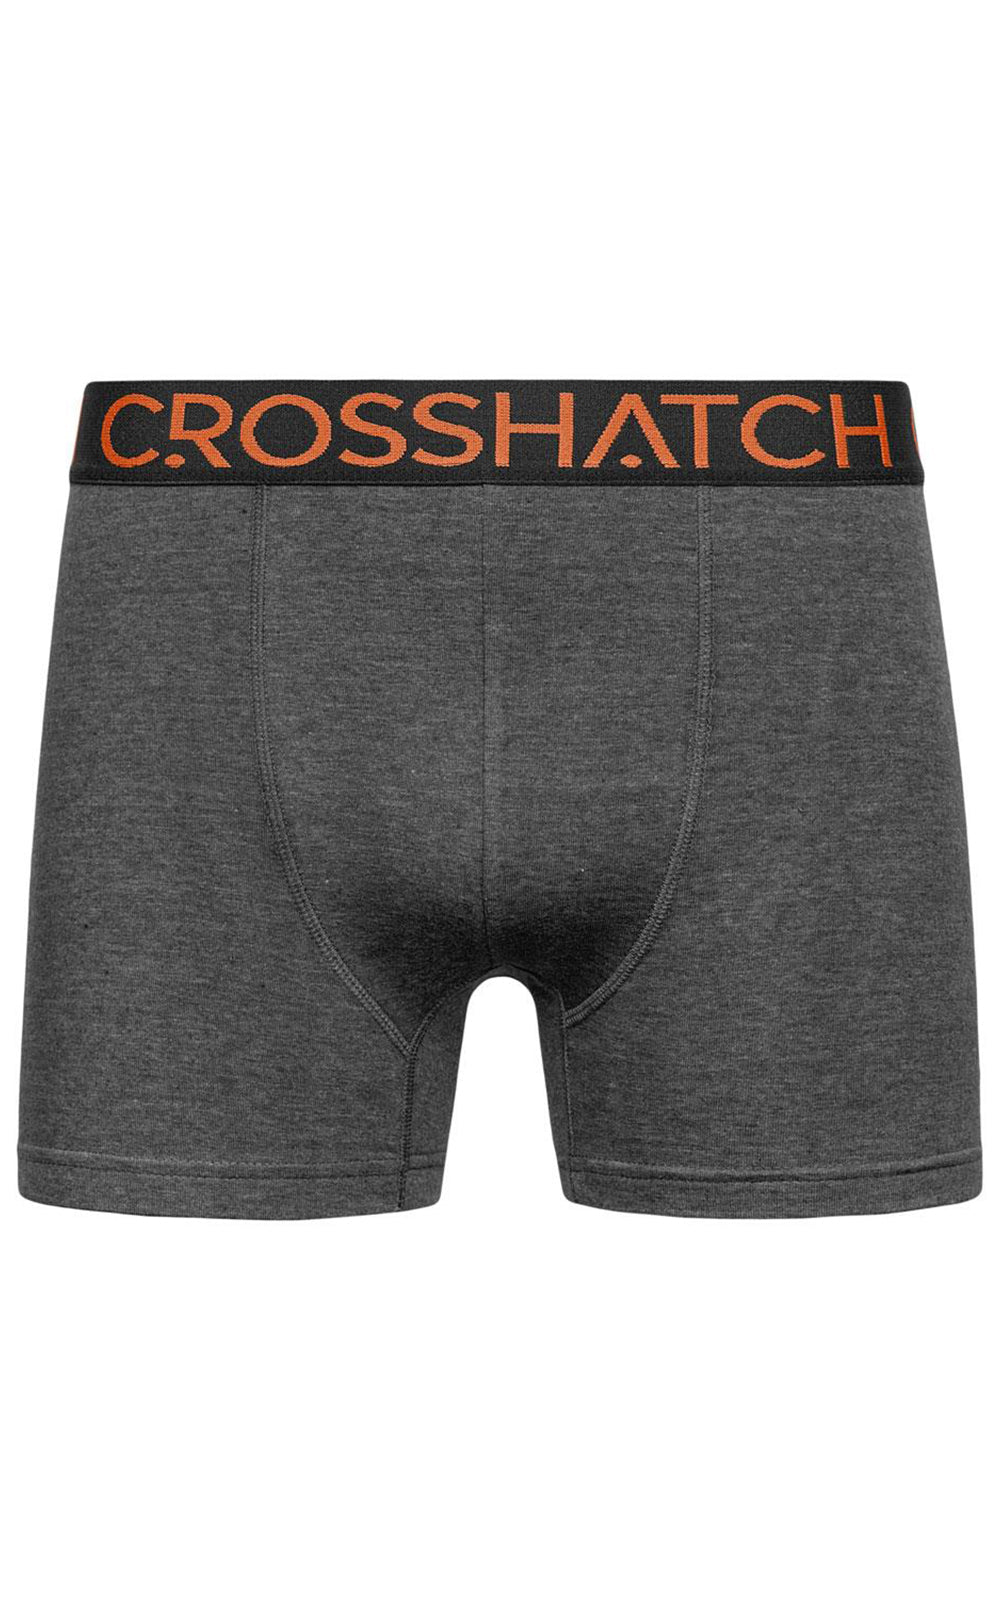 Crosshatch Men's Paulsen Boxers - Pack of 3